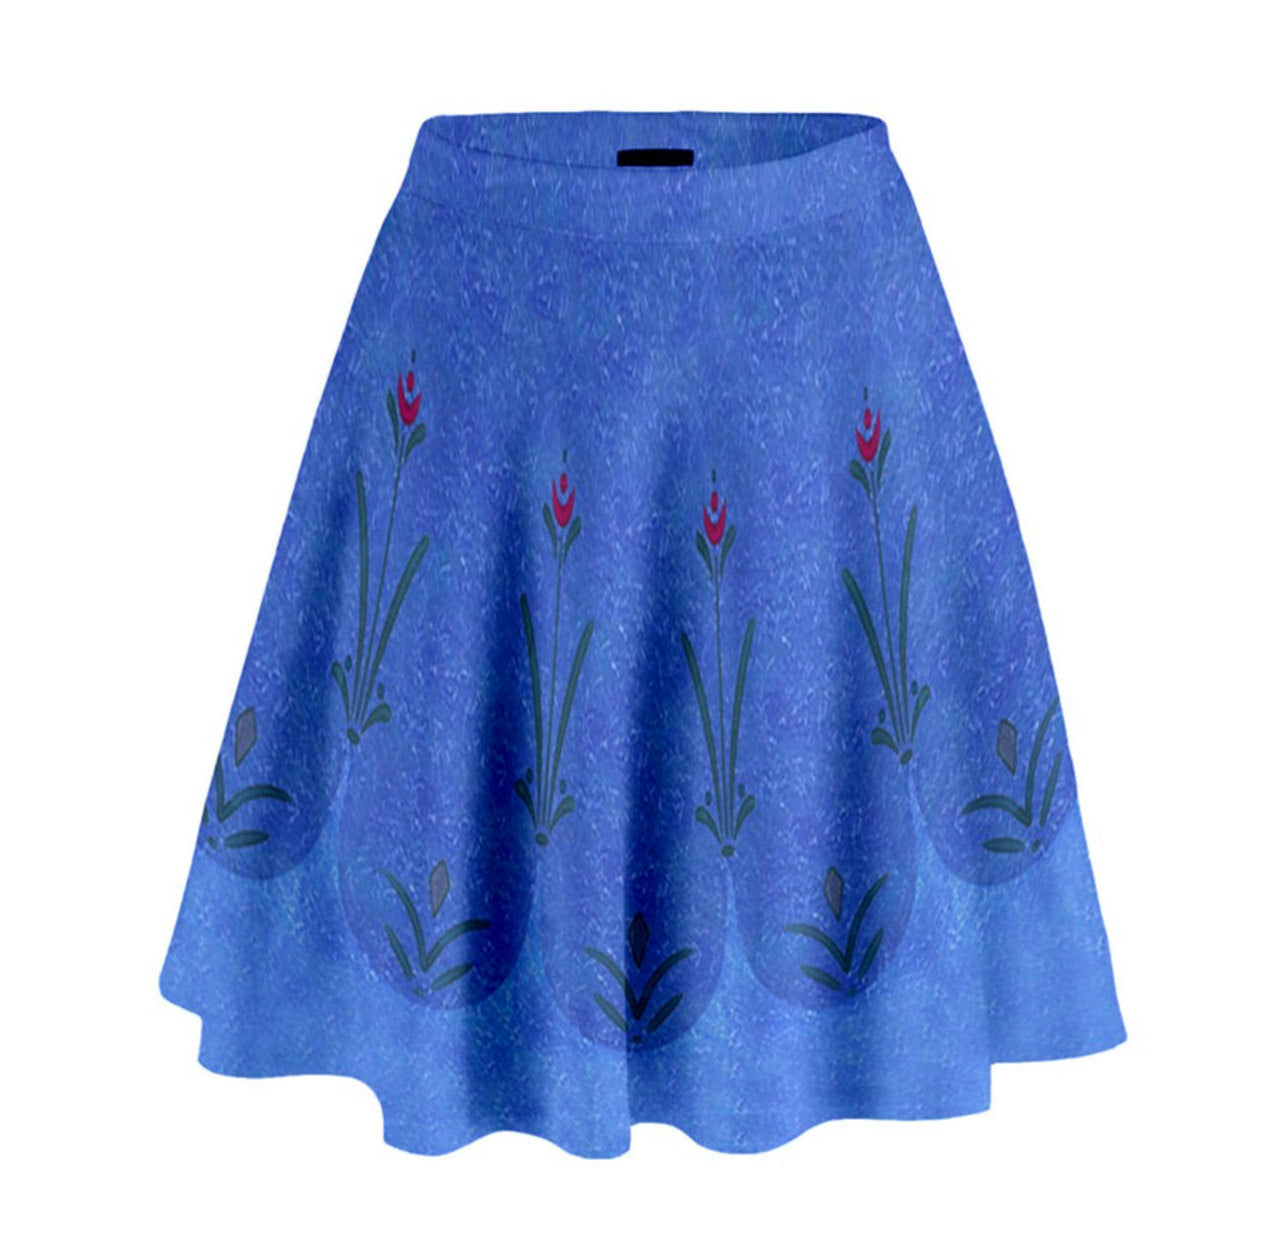 Anna Frozen Inspired High Waisted Skirt